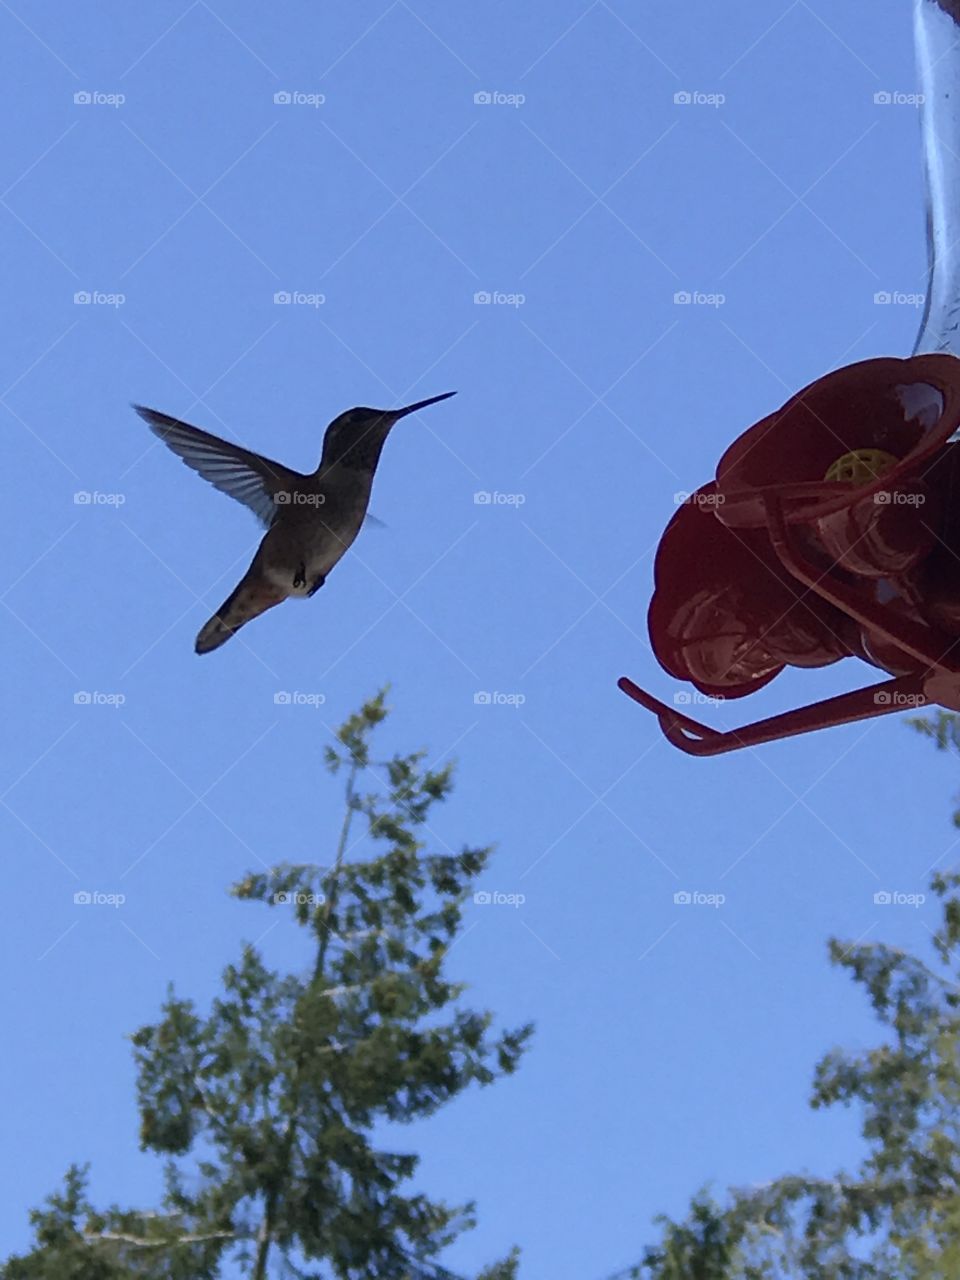 Hummingbird approaching a bird feeder 